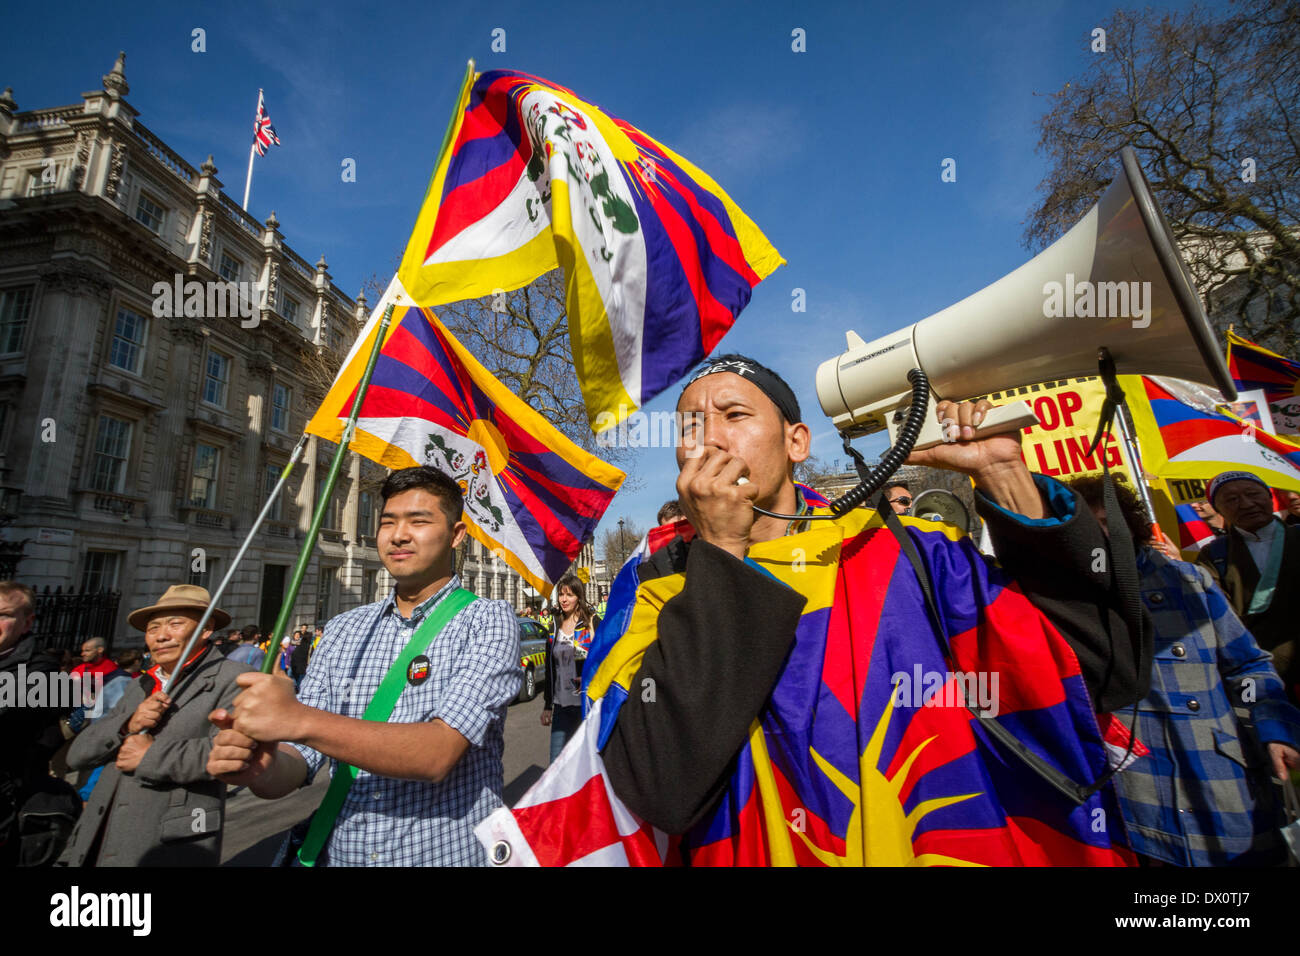 Tibet annuel de protestation pour la liberté d'occupation chinoise à Londres Banque D'Images